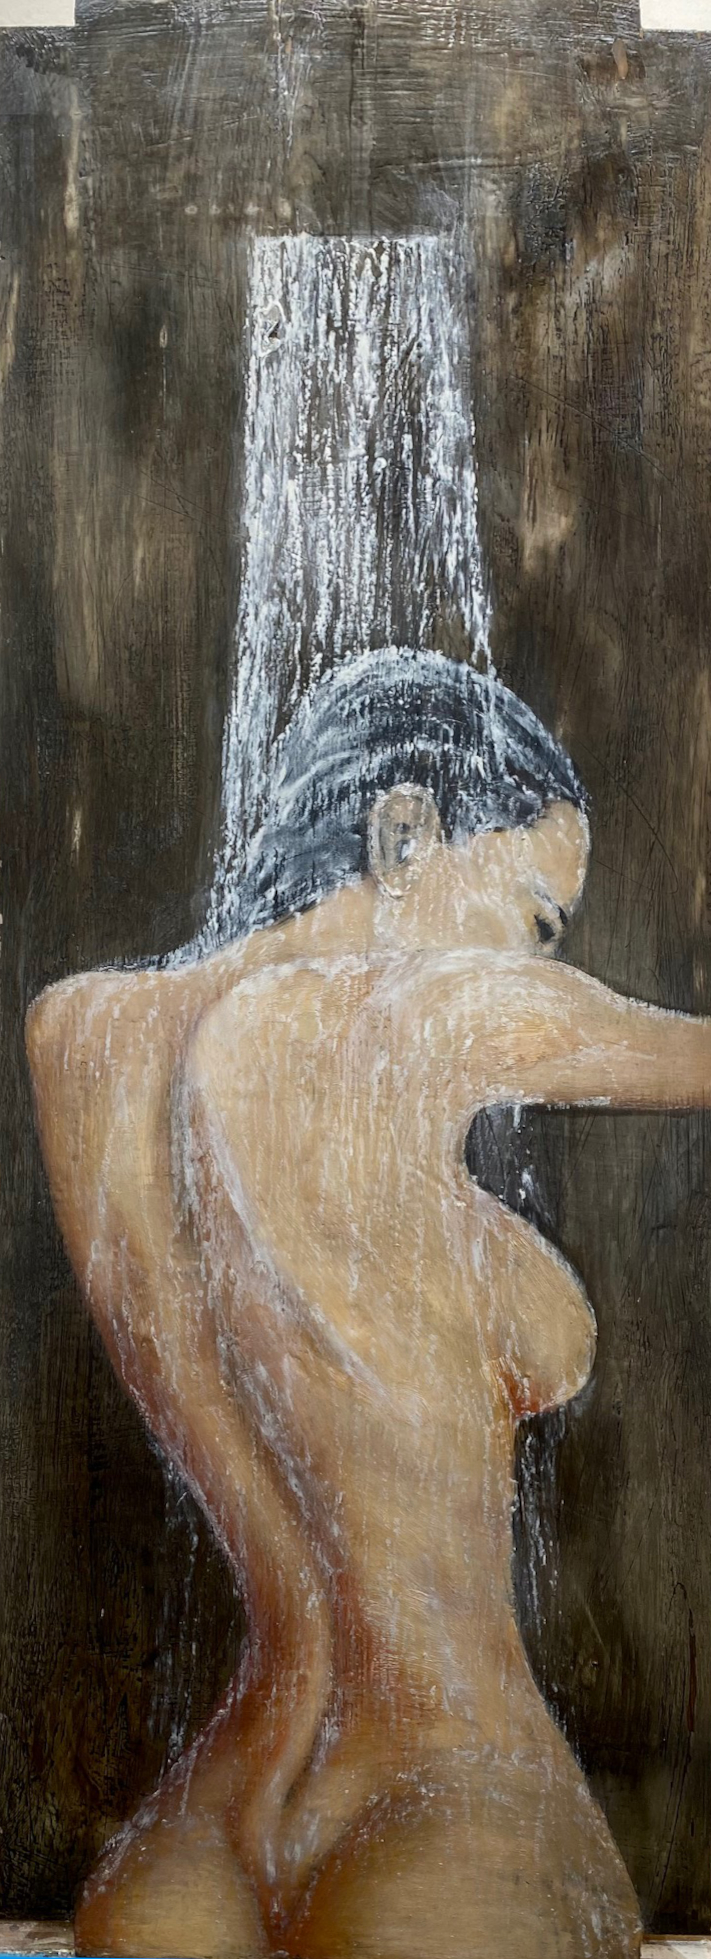 Bild mit einer Frau unter der Dusche Alena Omovych Plastic Sugery Influencer Insta Model Body Transformation